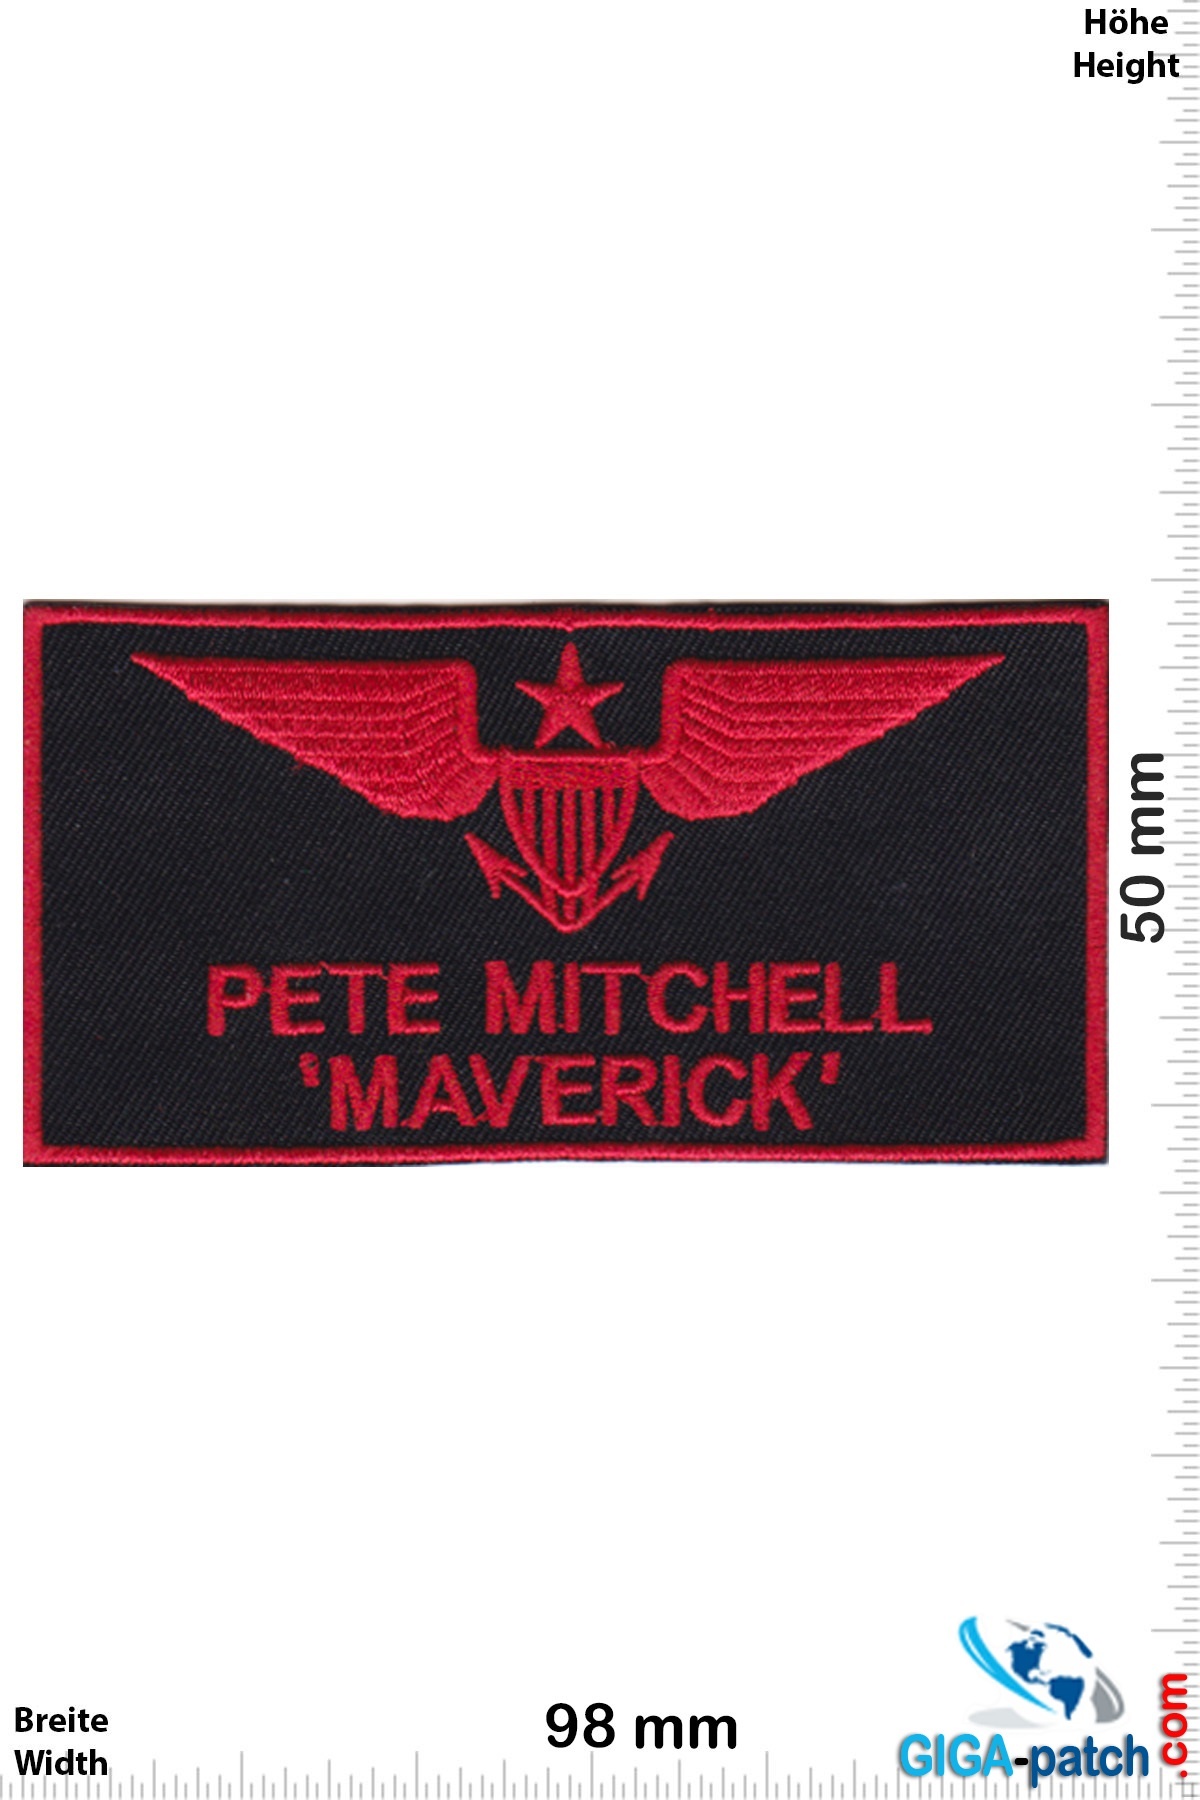 Top Gun Pete Mitchell - MAVERICK  -Top Gun